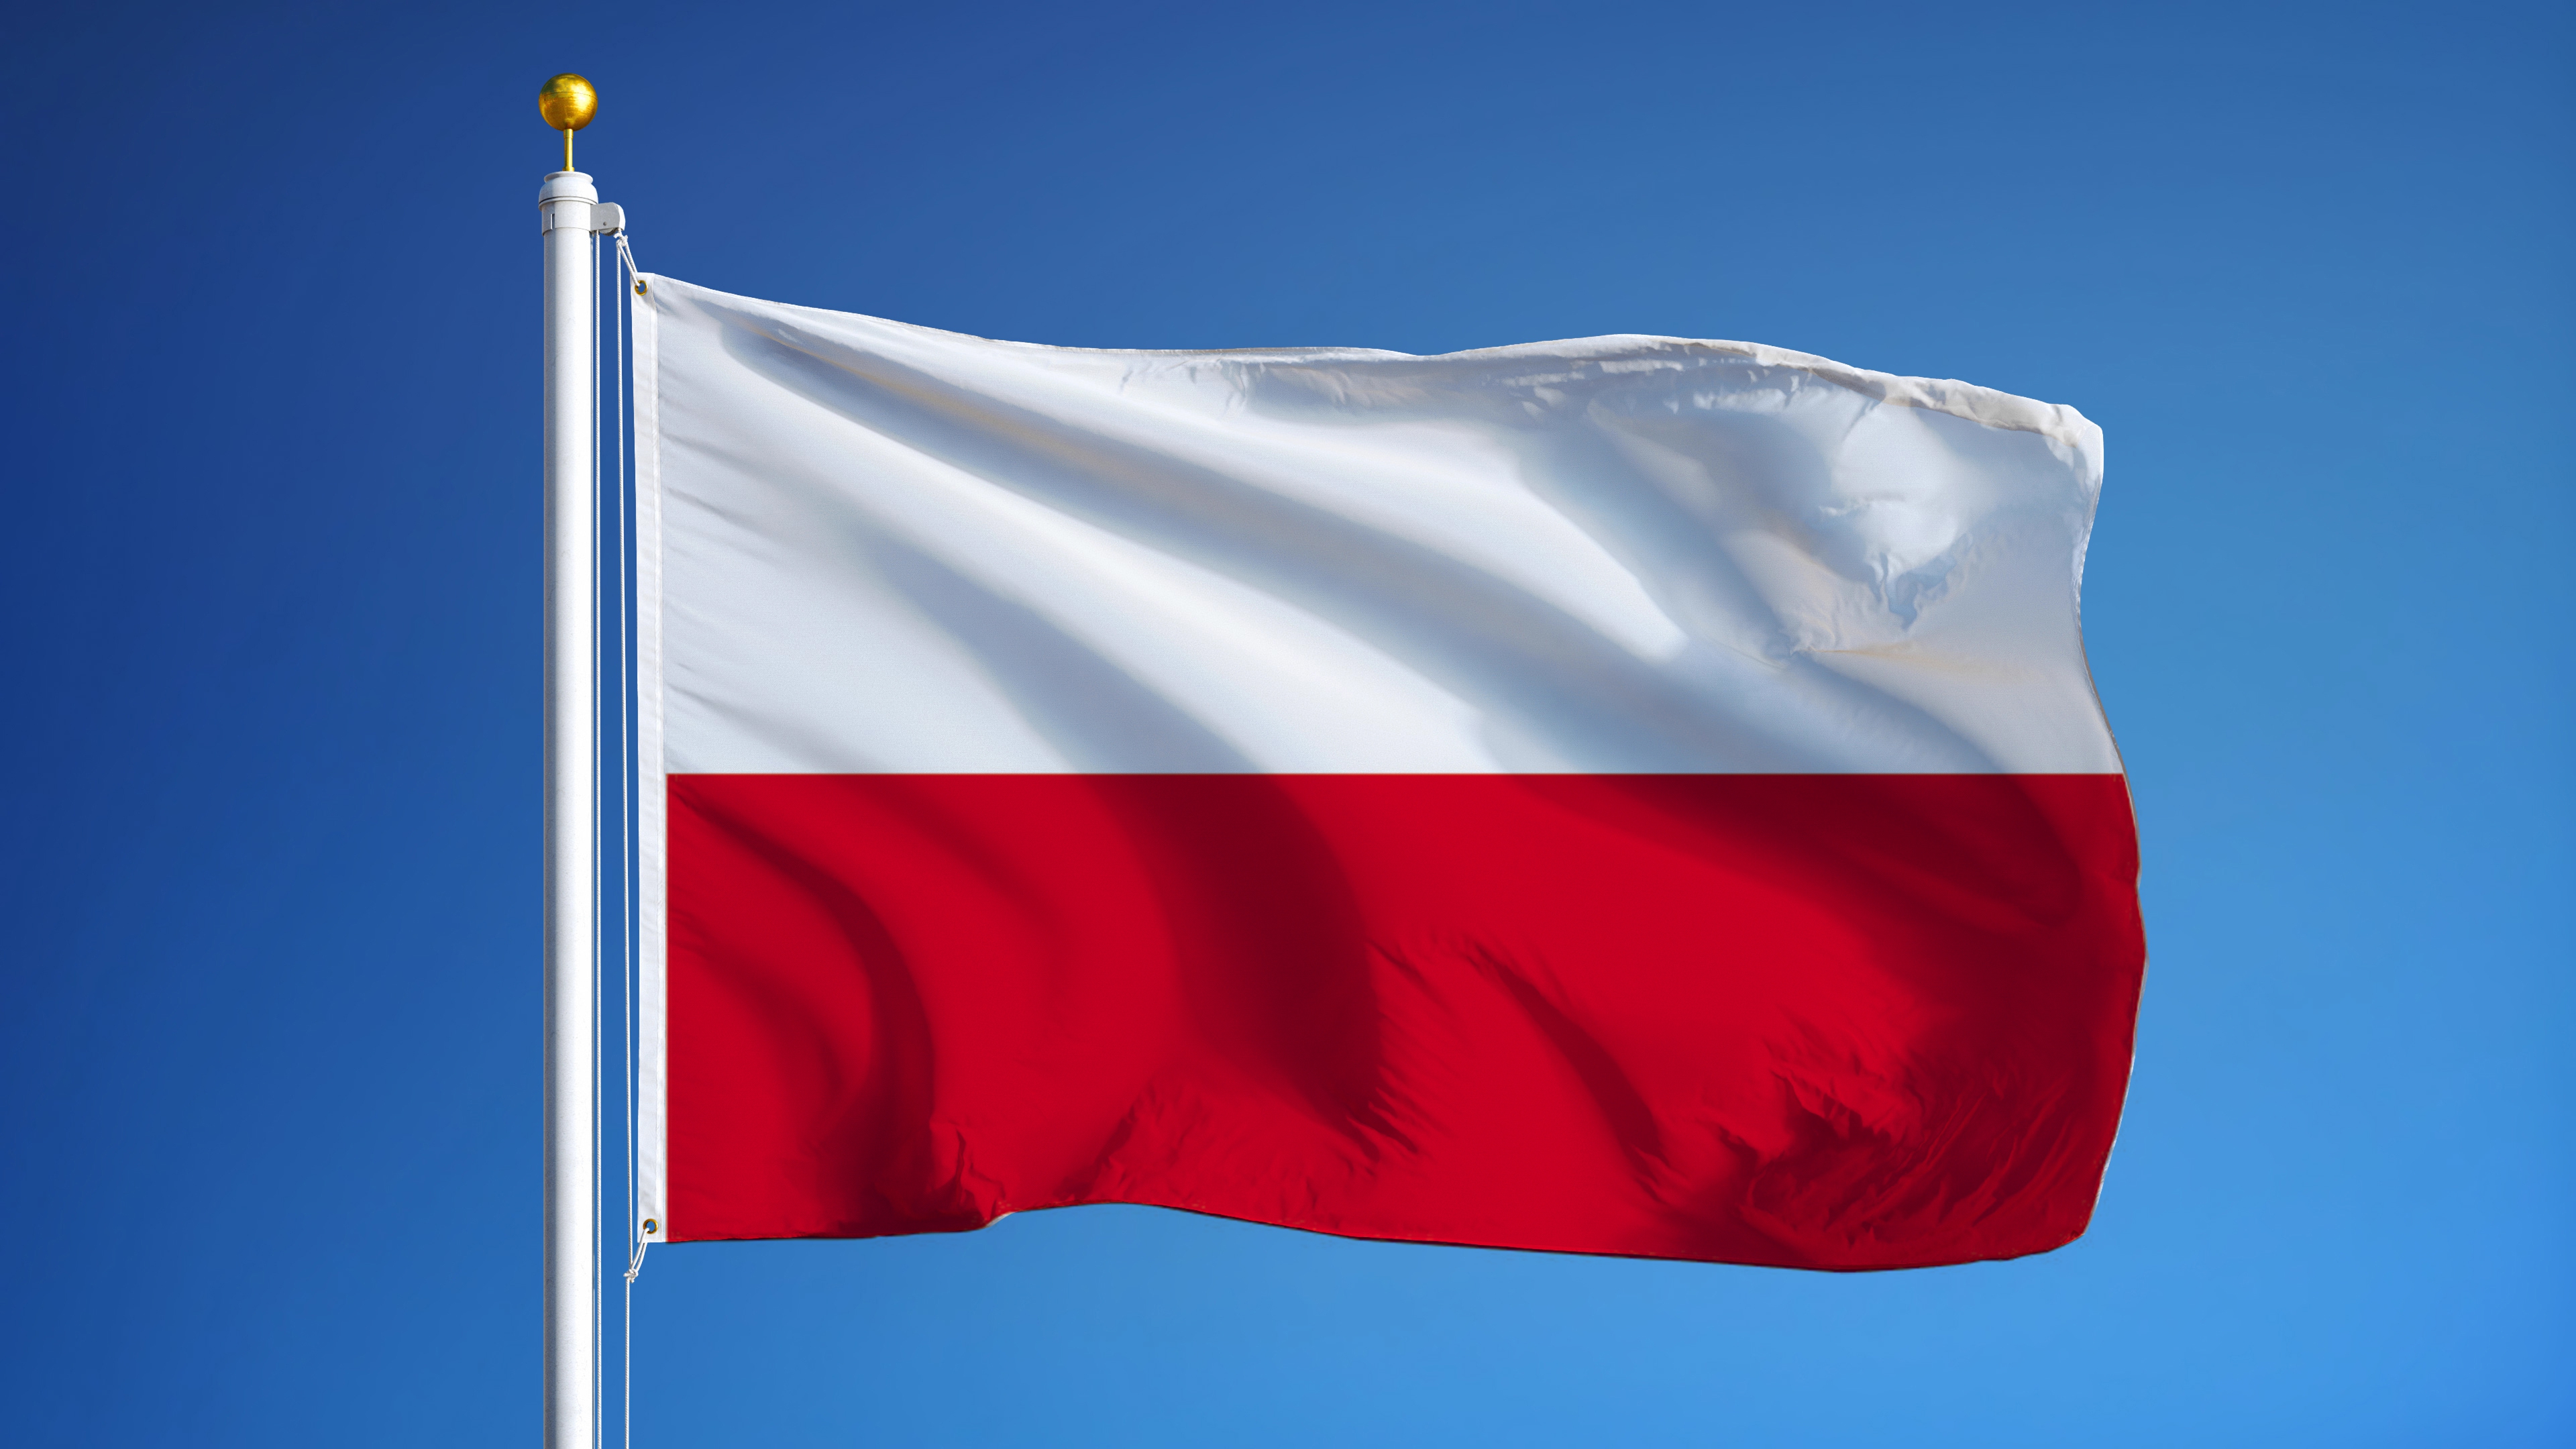 HATIRLATMA:  Polonya'da İkili ve 3. Ülke Taşımalarına Kayıt Zorunluluğu Getirildi